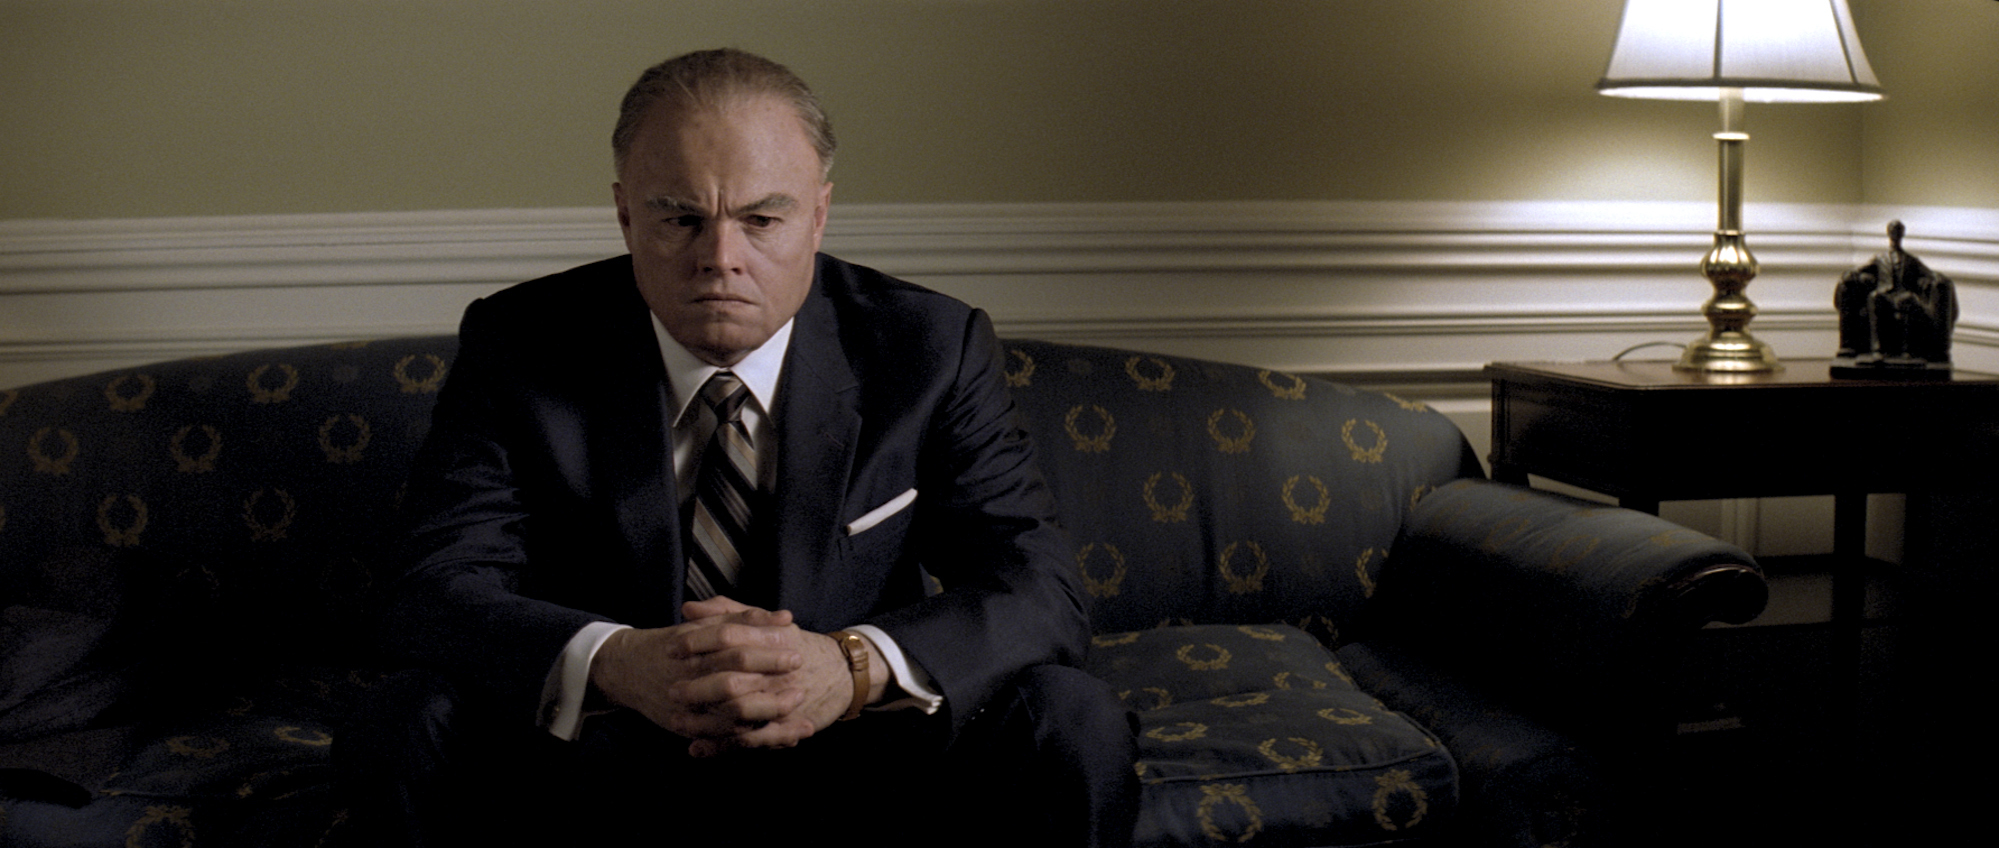 J. Edgar Hoover (Leonardo DiCaprio) - J. Edgar